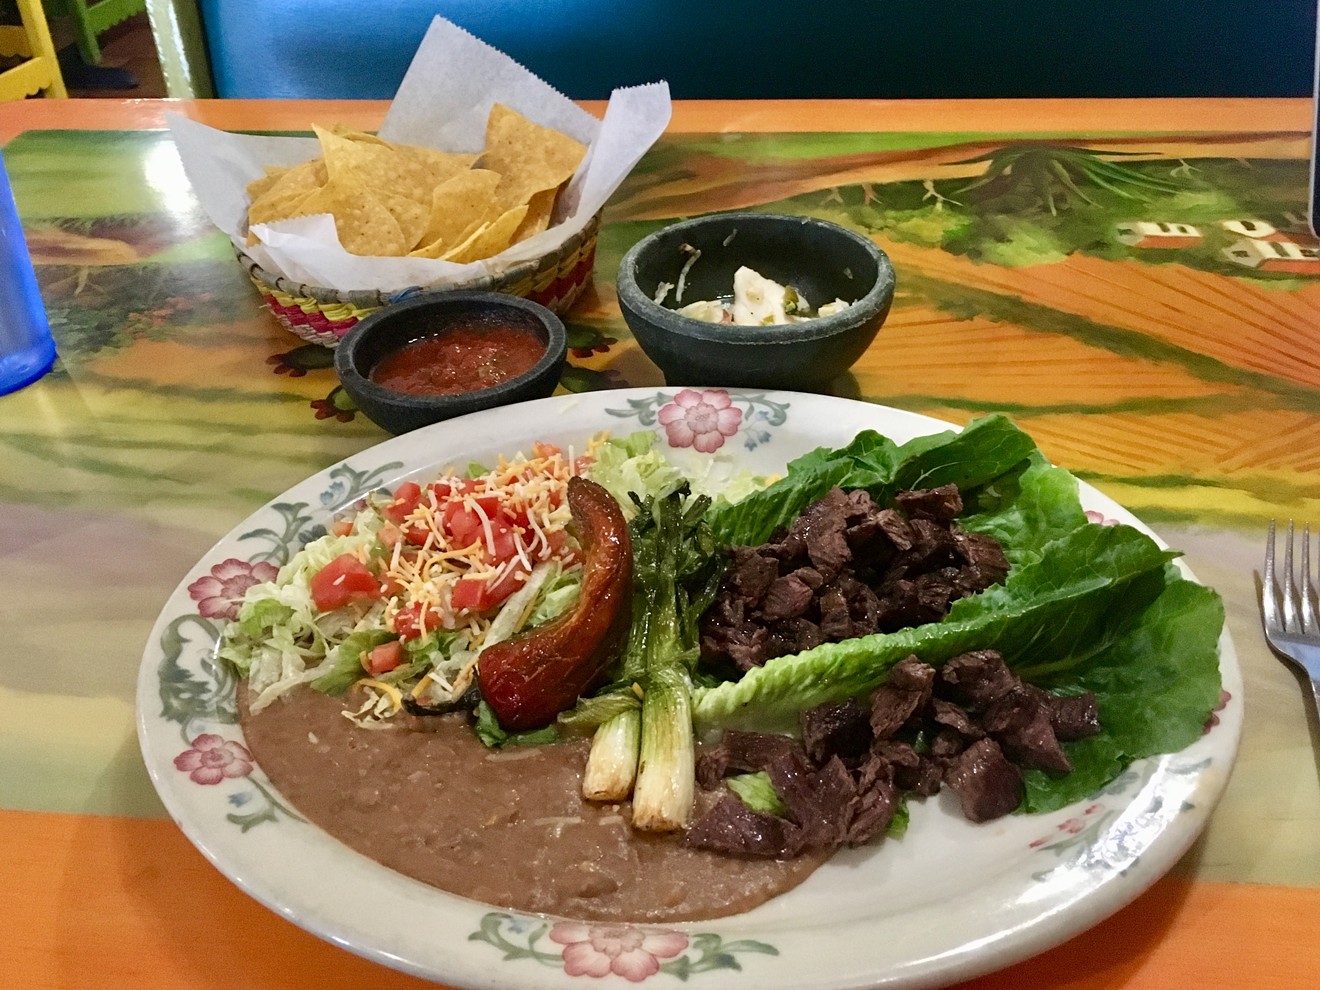 Skinny tacos offer a lighter option at El Tequileño.